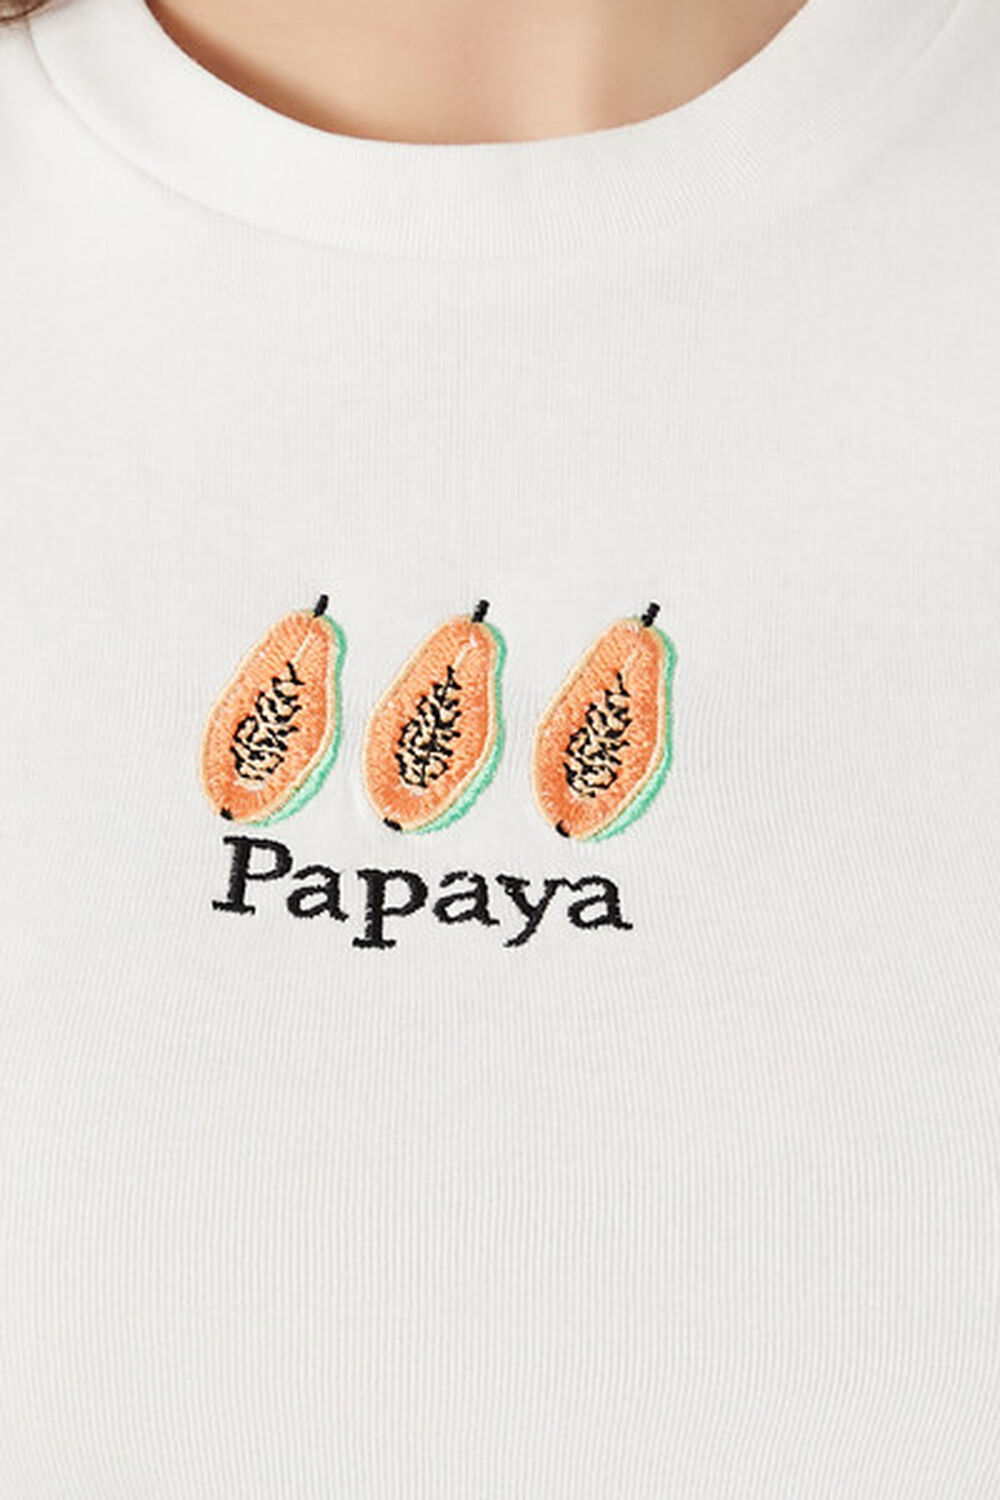 Papaya v2 Tee